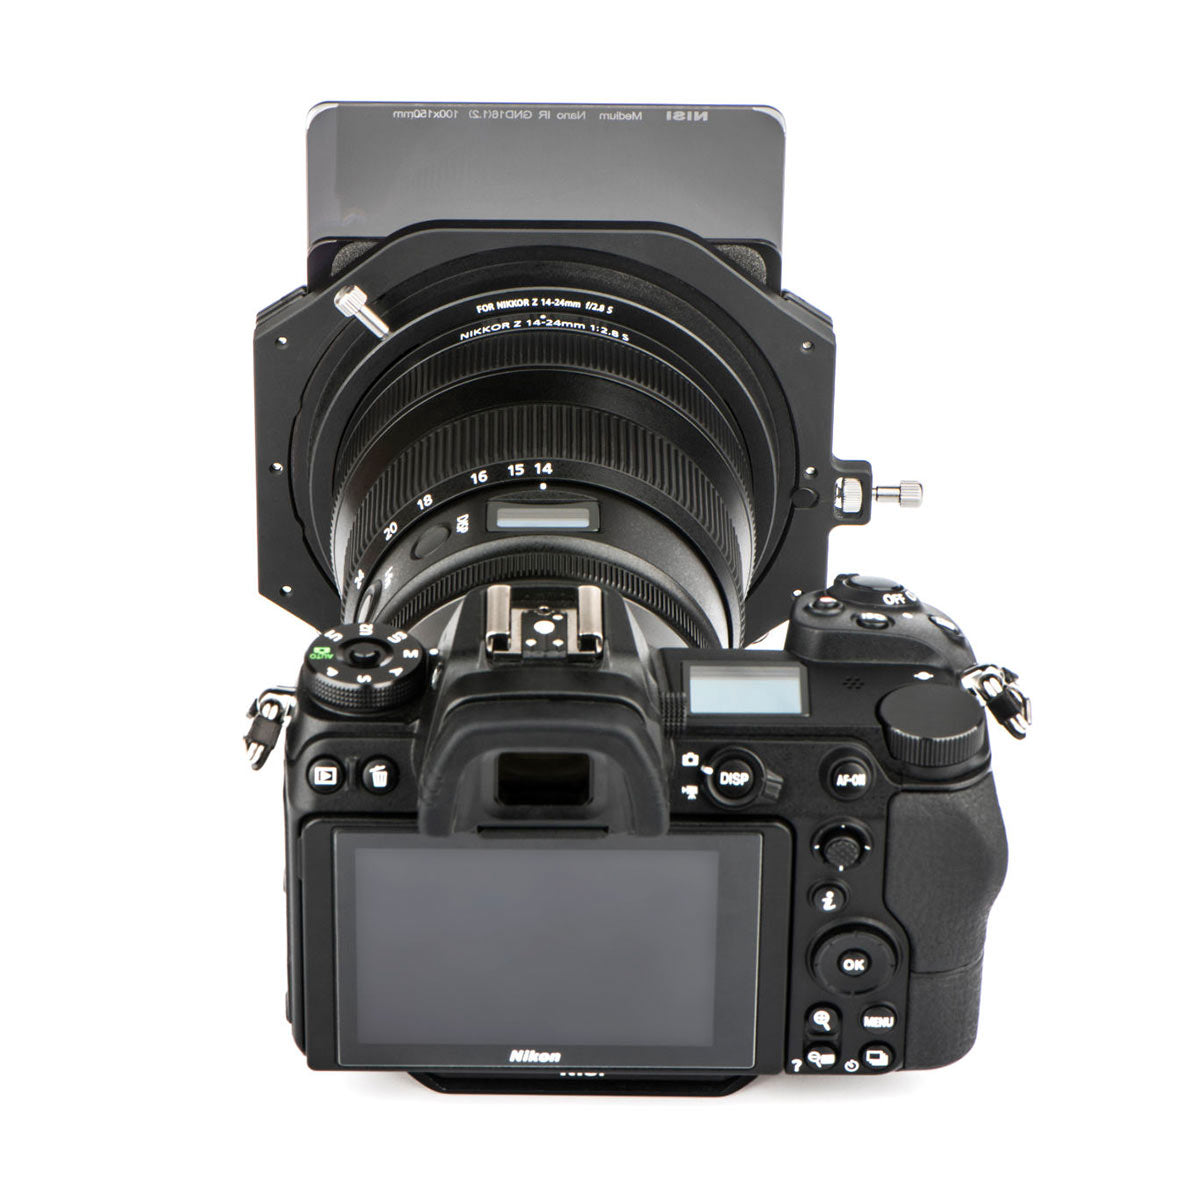 NiSi 100mm Filter Holder for Nikon Z 14-24mm f/2.8 S